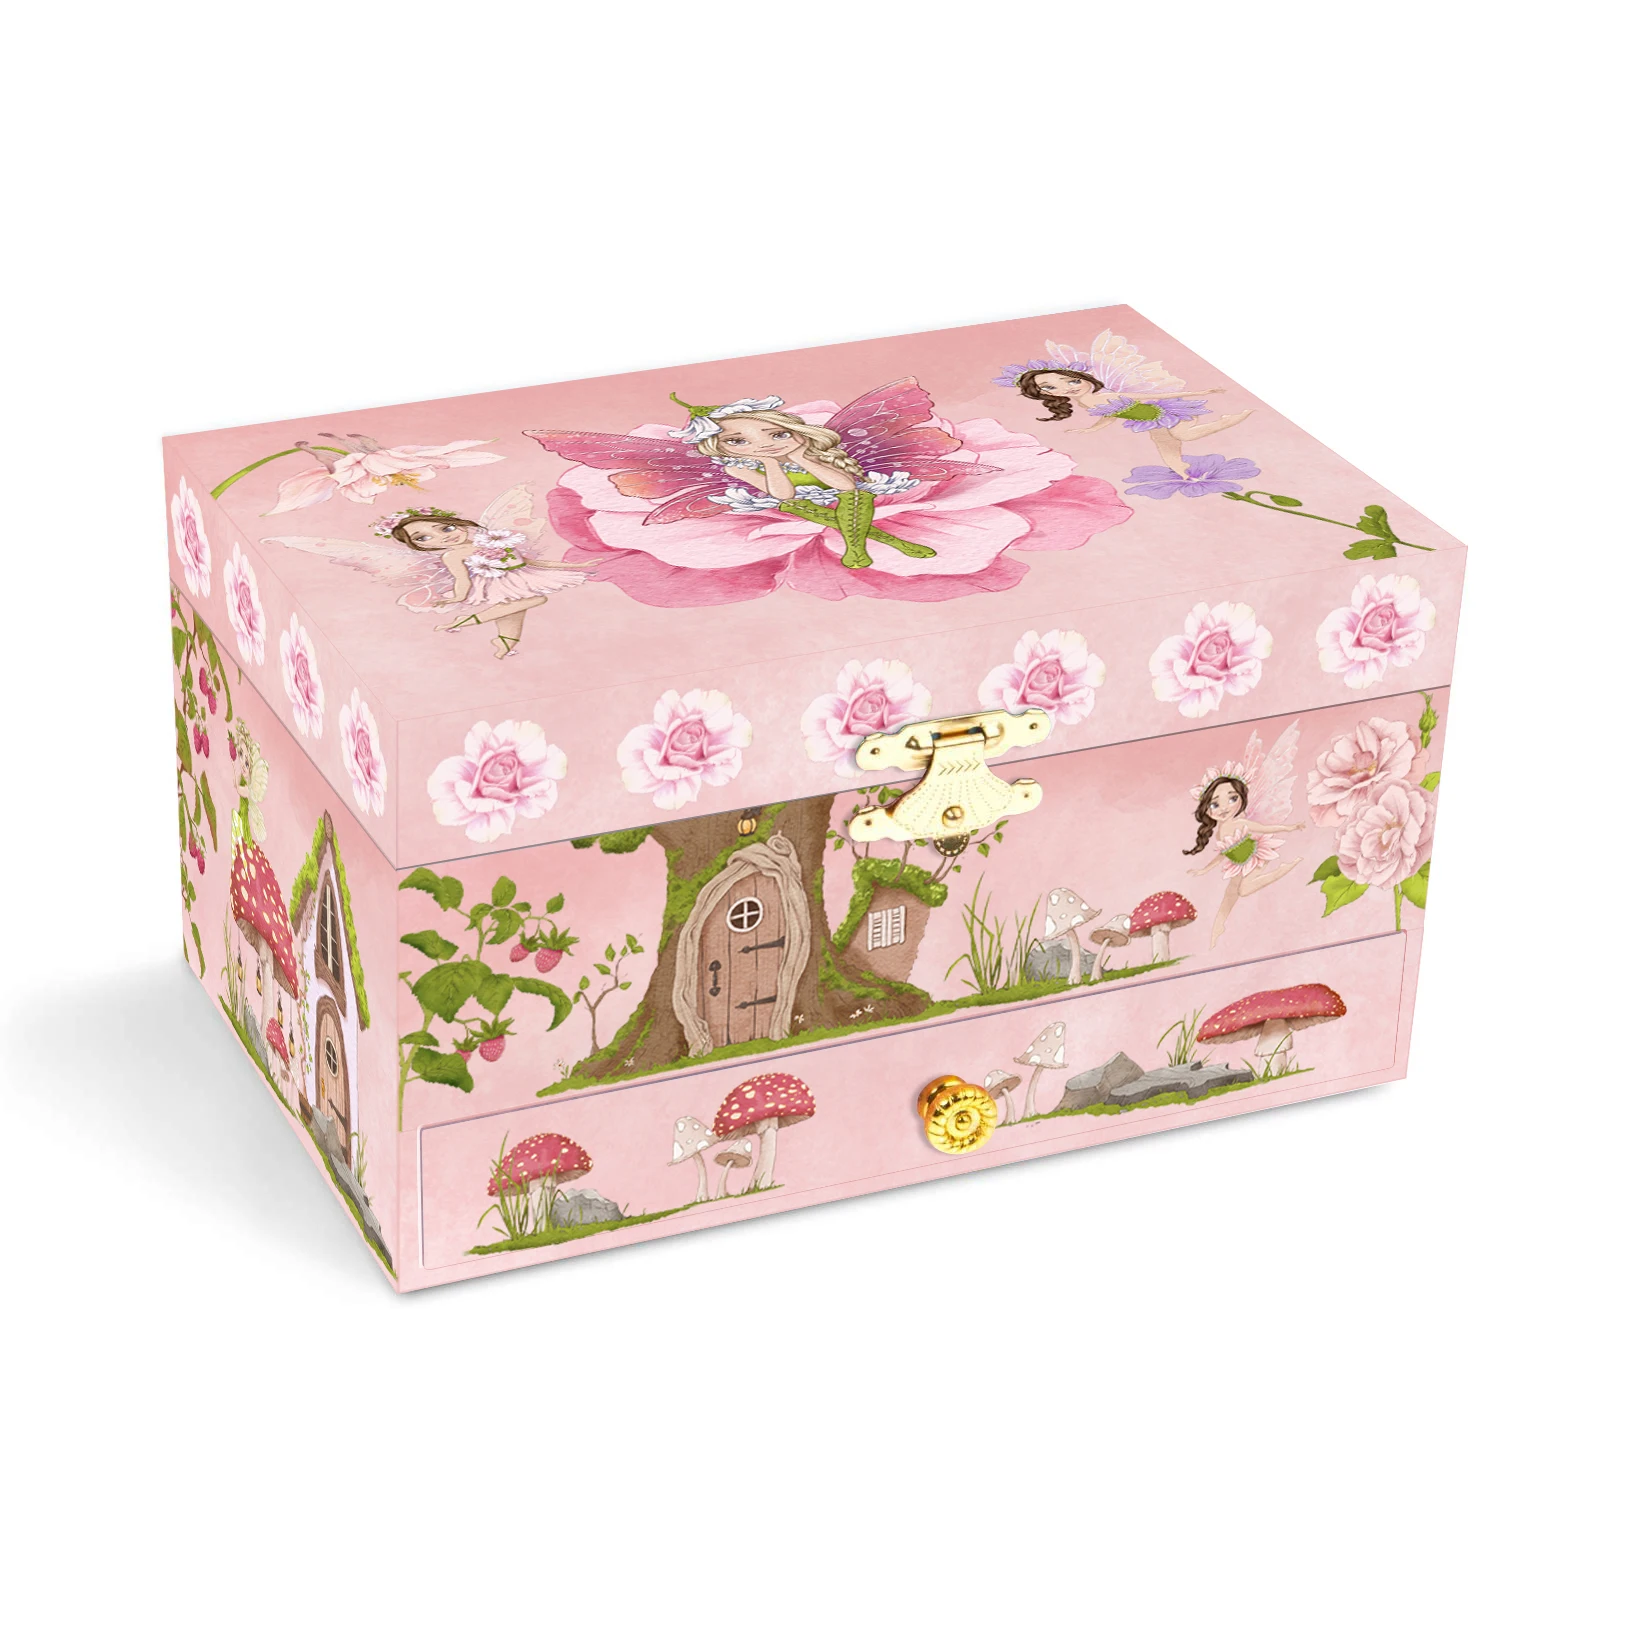 Ever Bright Custom Pure White Dance Ballerina Unicorn Music Box Ballerina Jewelry Music Box With Drawer For Girls & Boy Gift